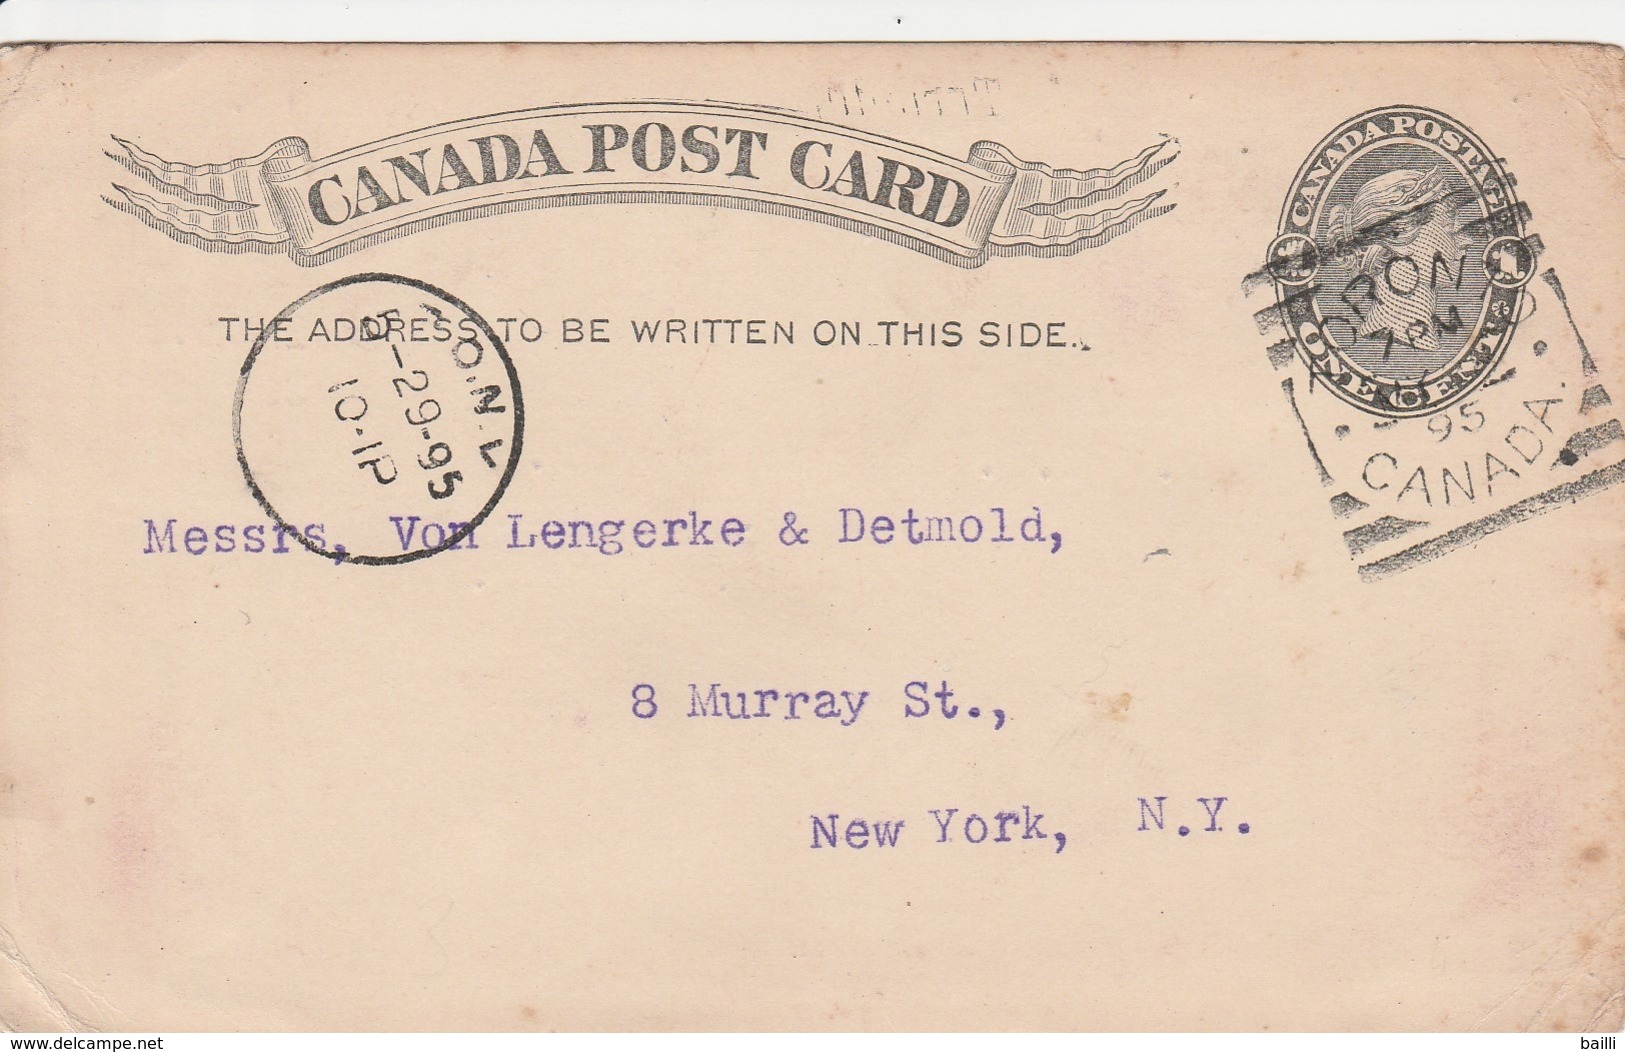 Canada Entier Postal Pour Les Etats Unis 1895 - 1860-1899 Reign Of Victoria